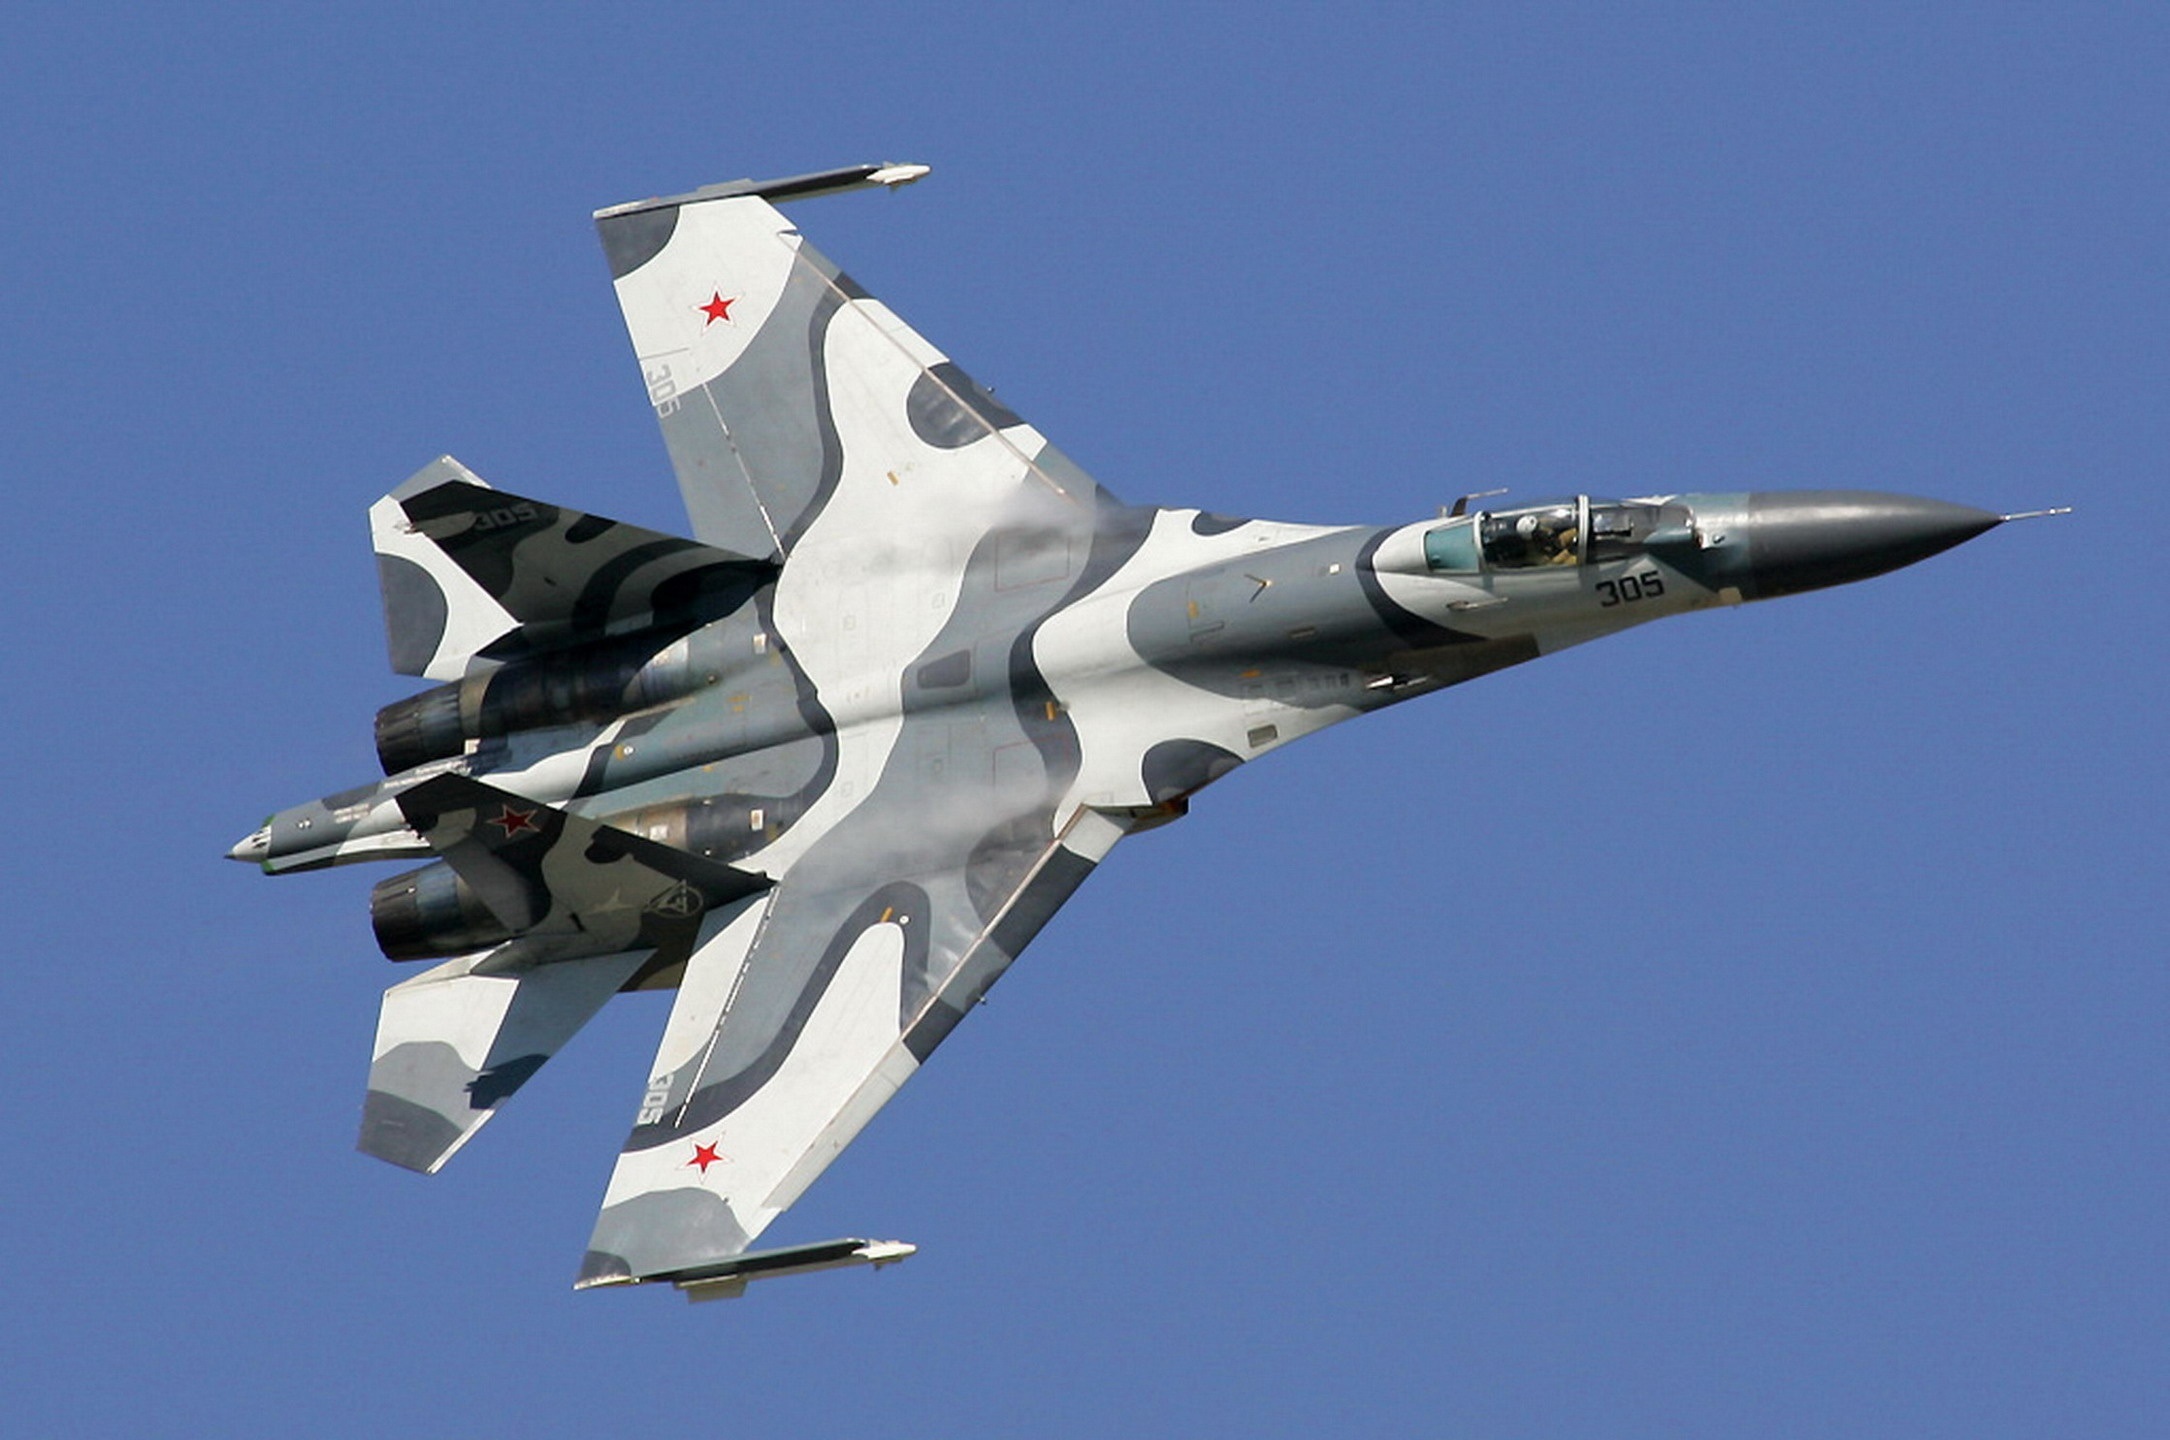 Sukhoi_Su-27SKM_at_MAKS-2005_airshow